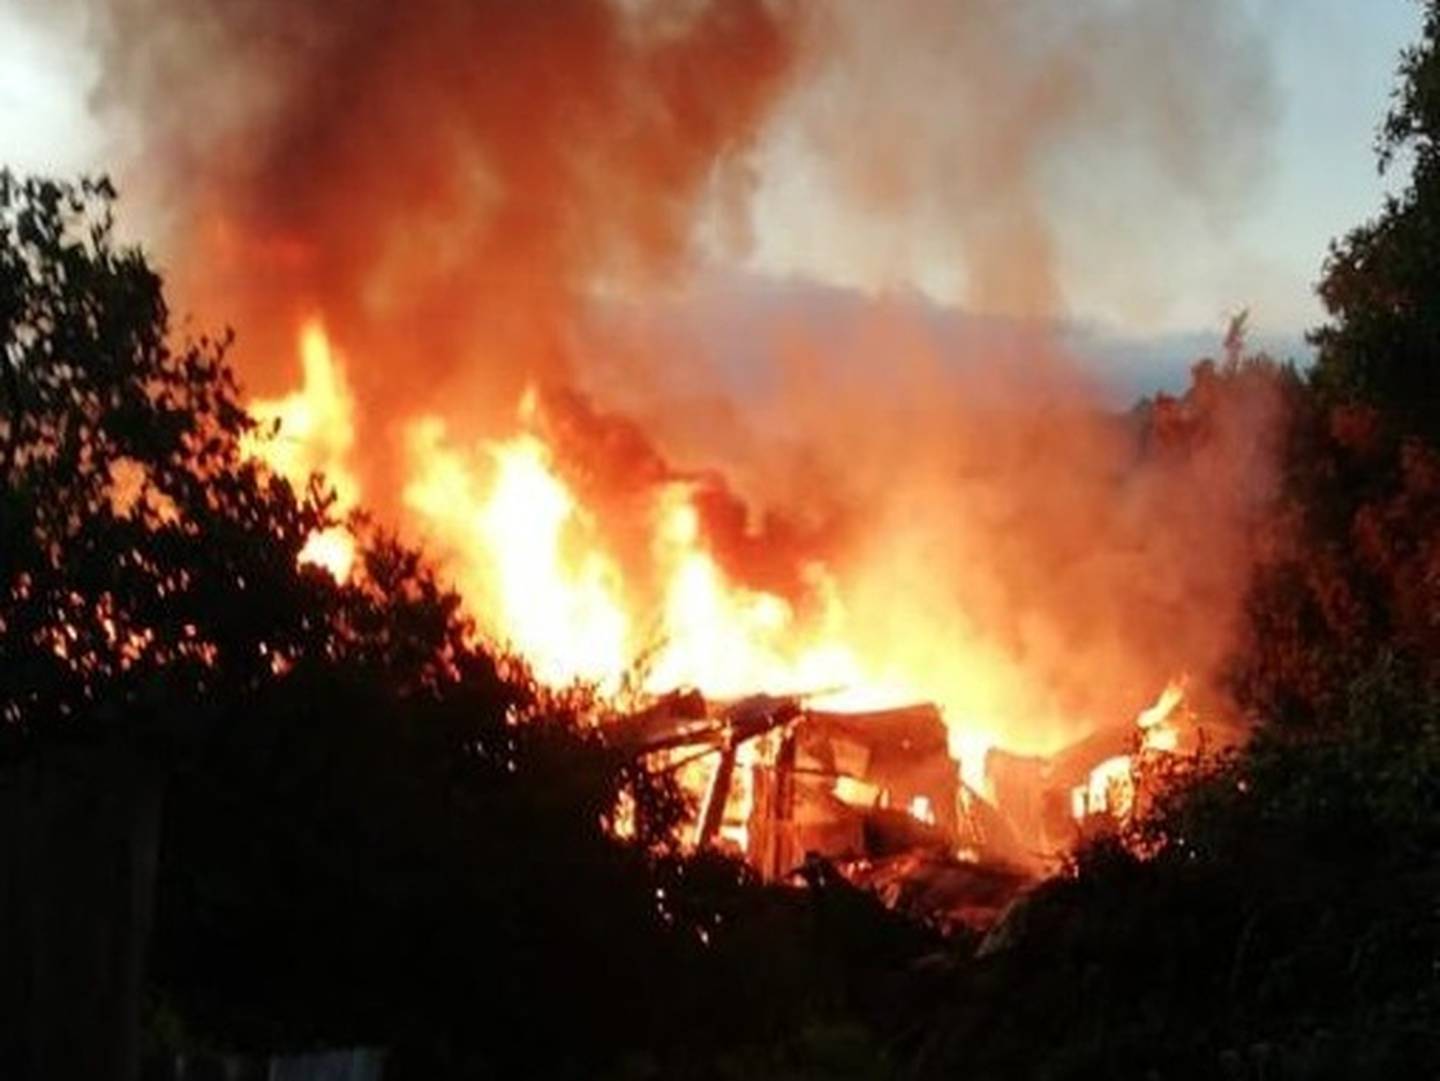 Bomberos hallan cuerpo de hombre en casa quemada en San Rafael de Heredia. Foto Bomberos.